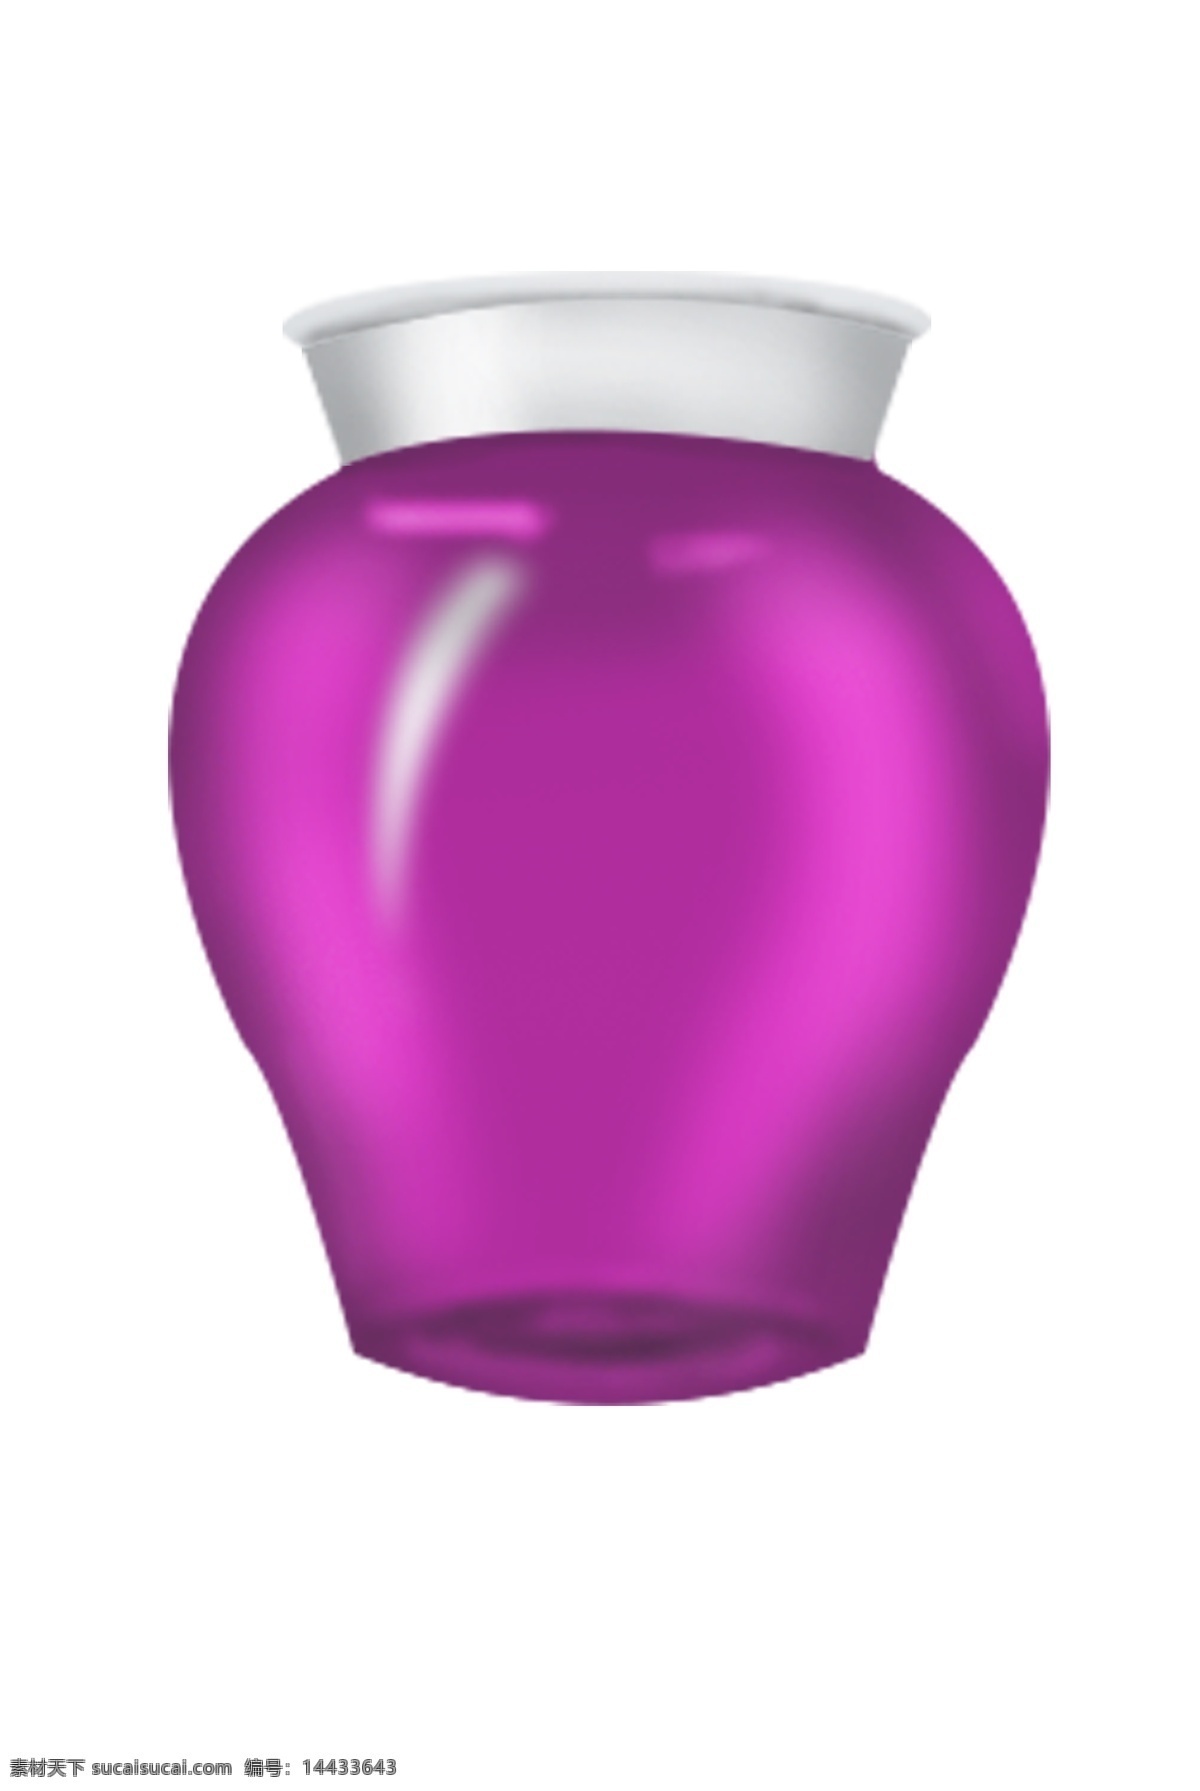 紫色 玻璃 瓶子 插图 紫色瓶子 白色盖子 圆形瓶子 可爱的瓶子 装东西的瓶子 精美的瓶子 时尚的瓶子